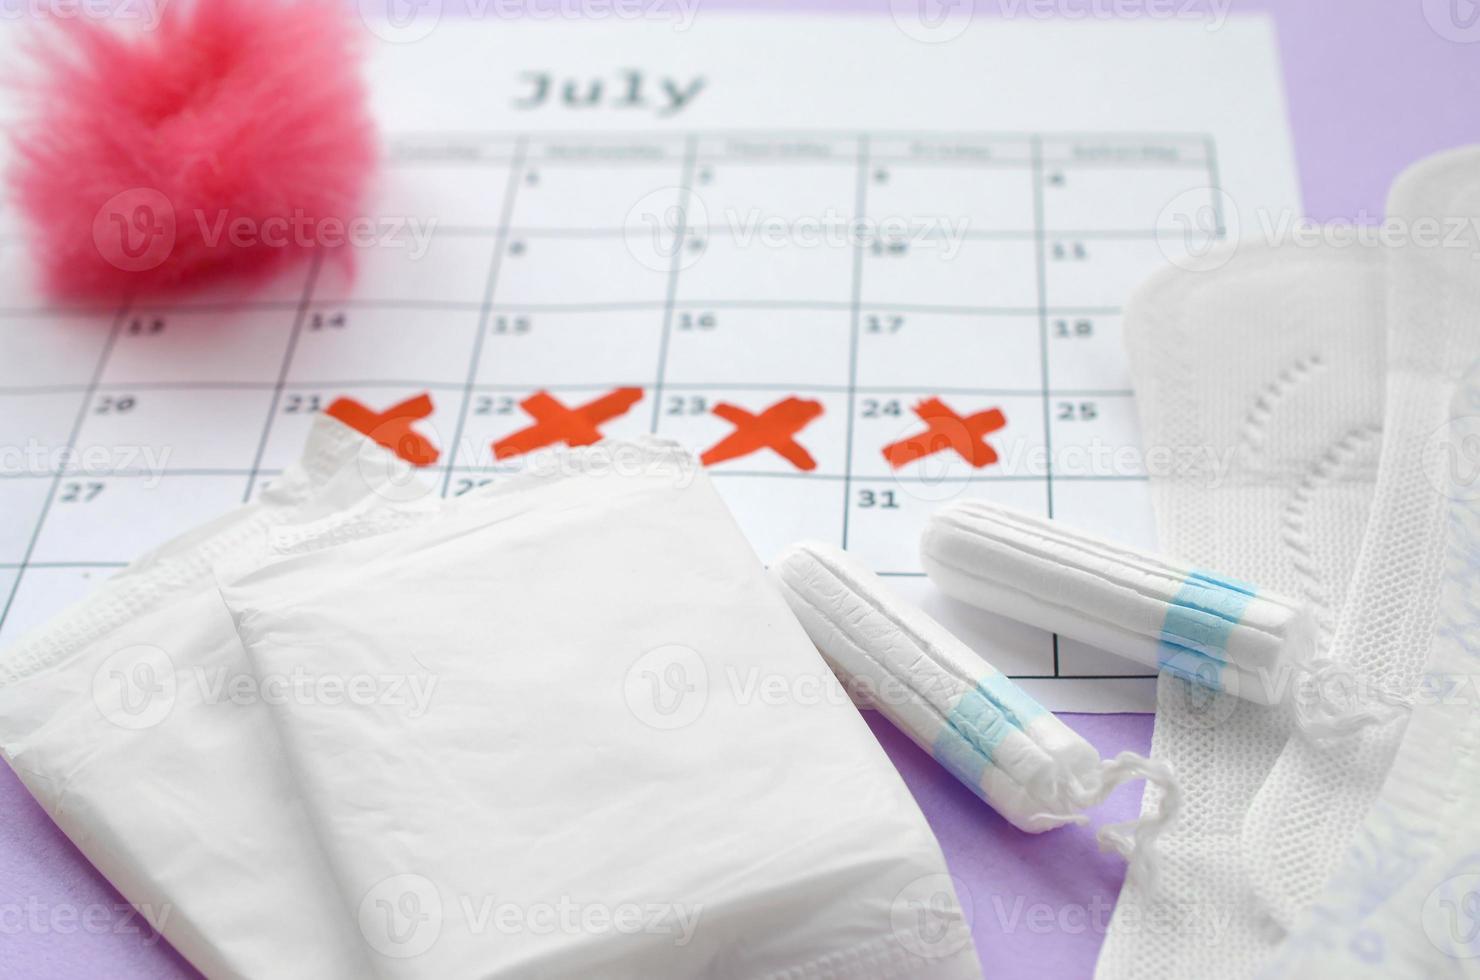 almofadas menstruais e tampões no calendário do período de menstruação com marcas da cruz vermelha encontra-se no fundo lilás foto